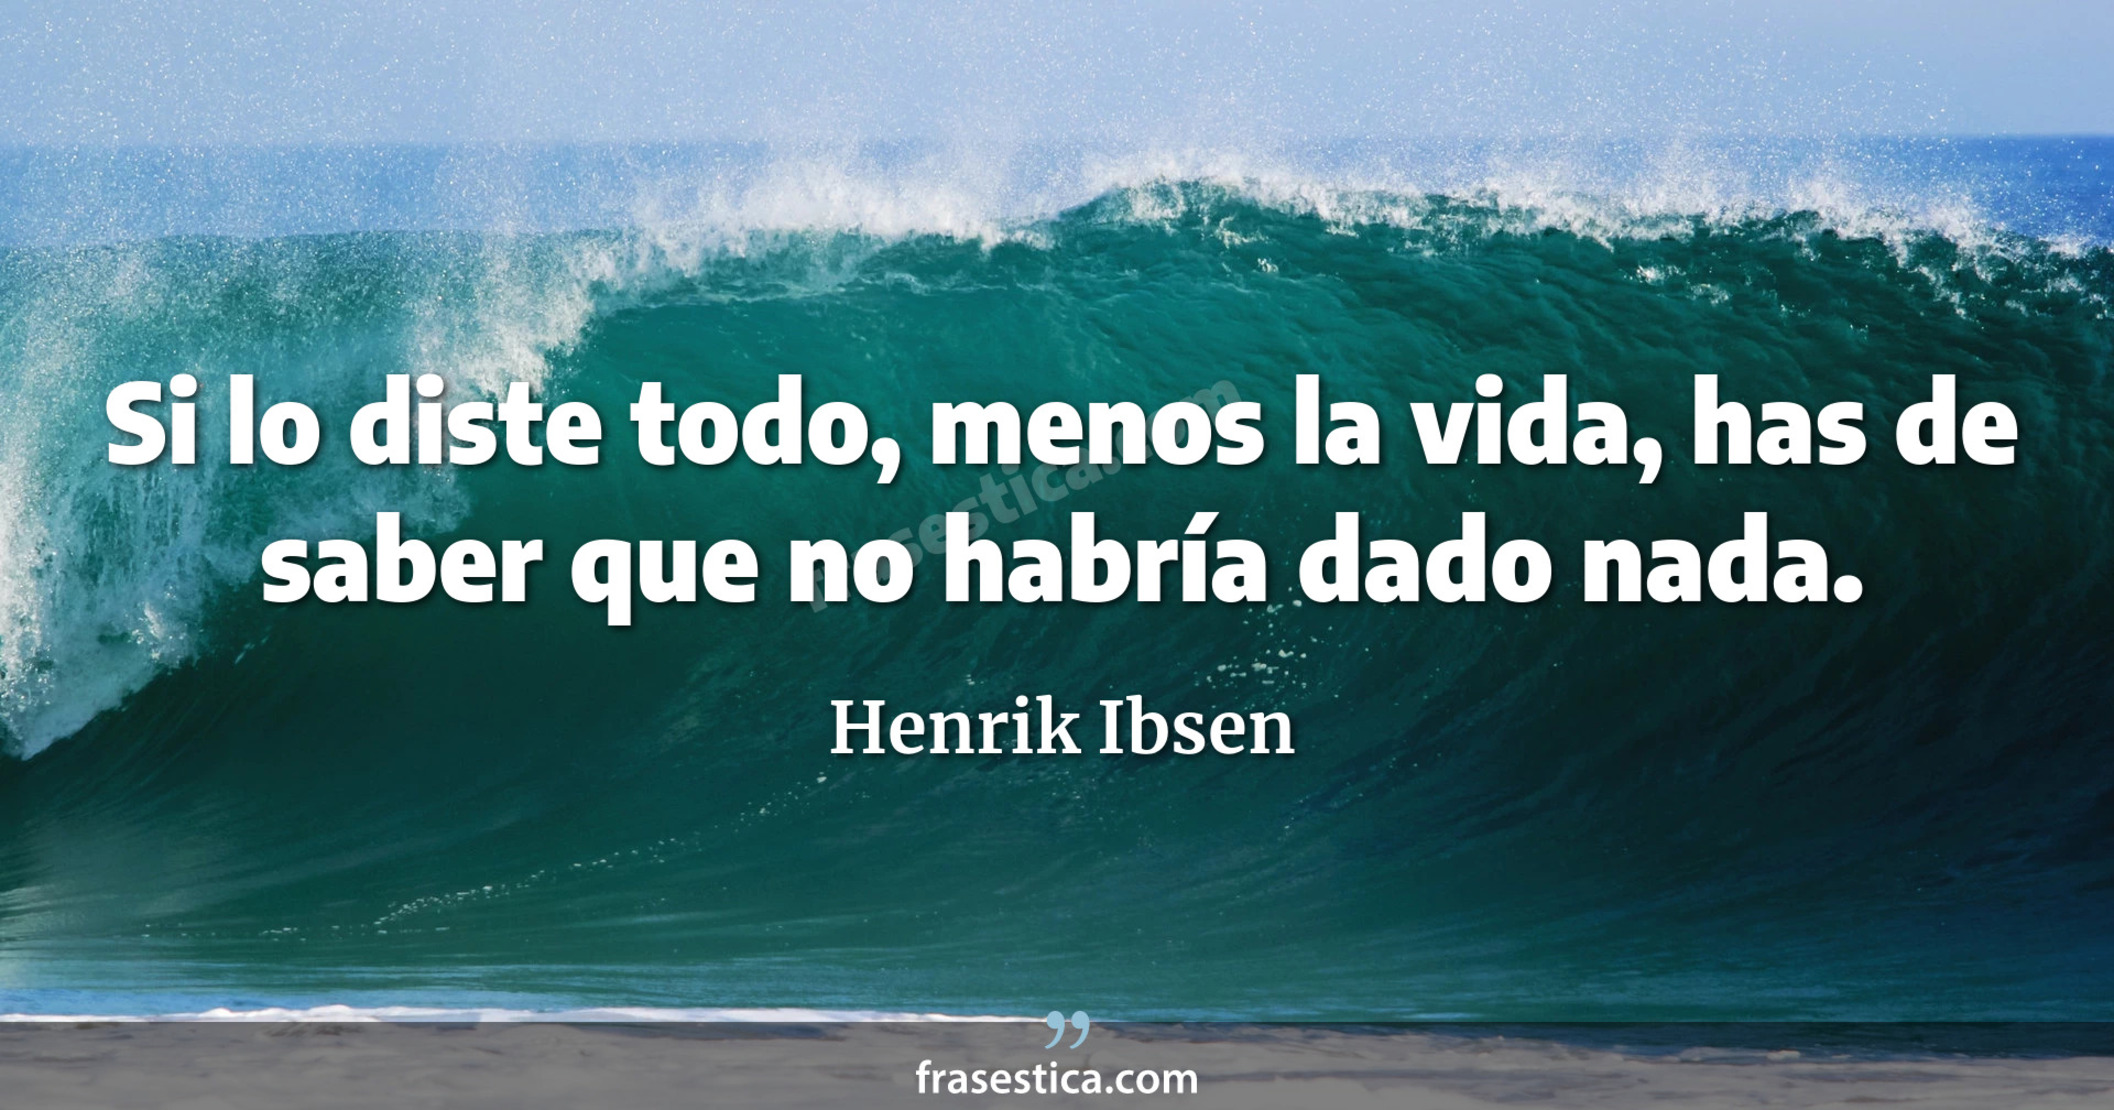 Si lo diste todo, menos la vida, has de saber que no habría dado nada. - Henrik Ibsen